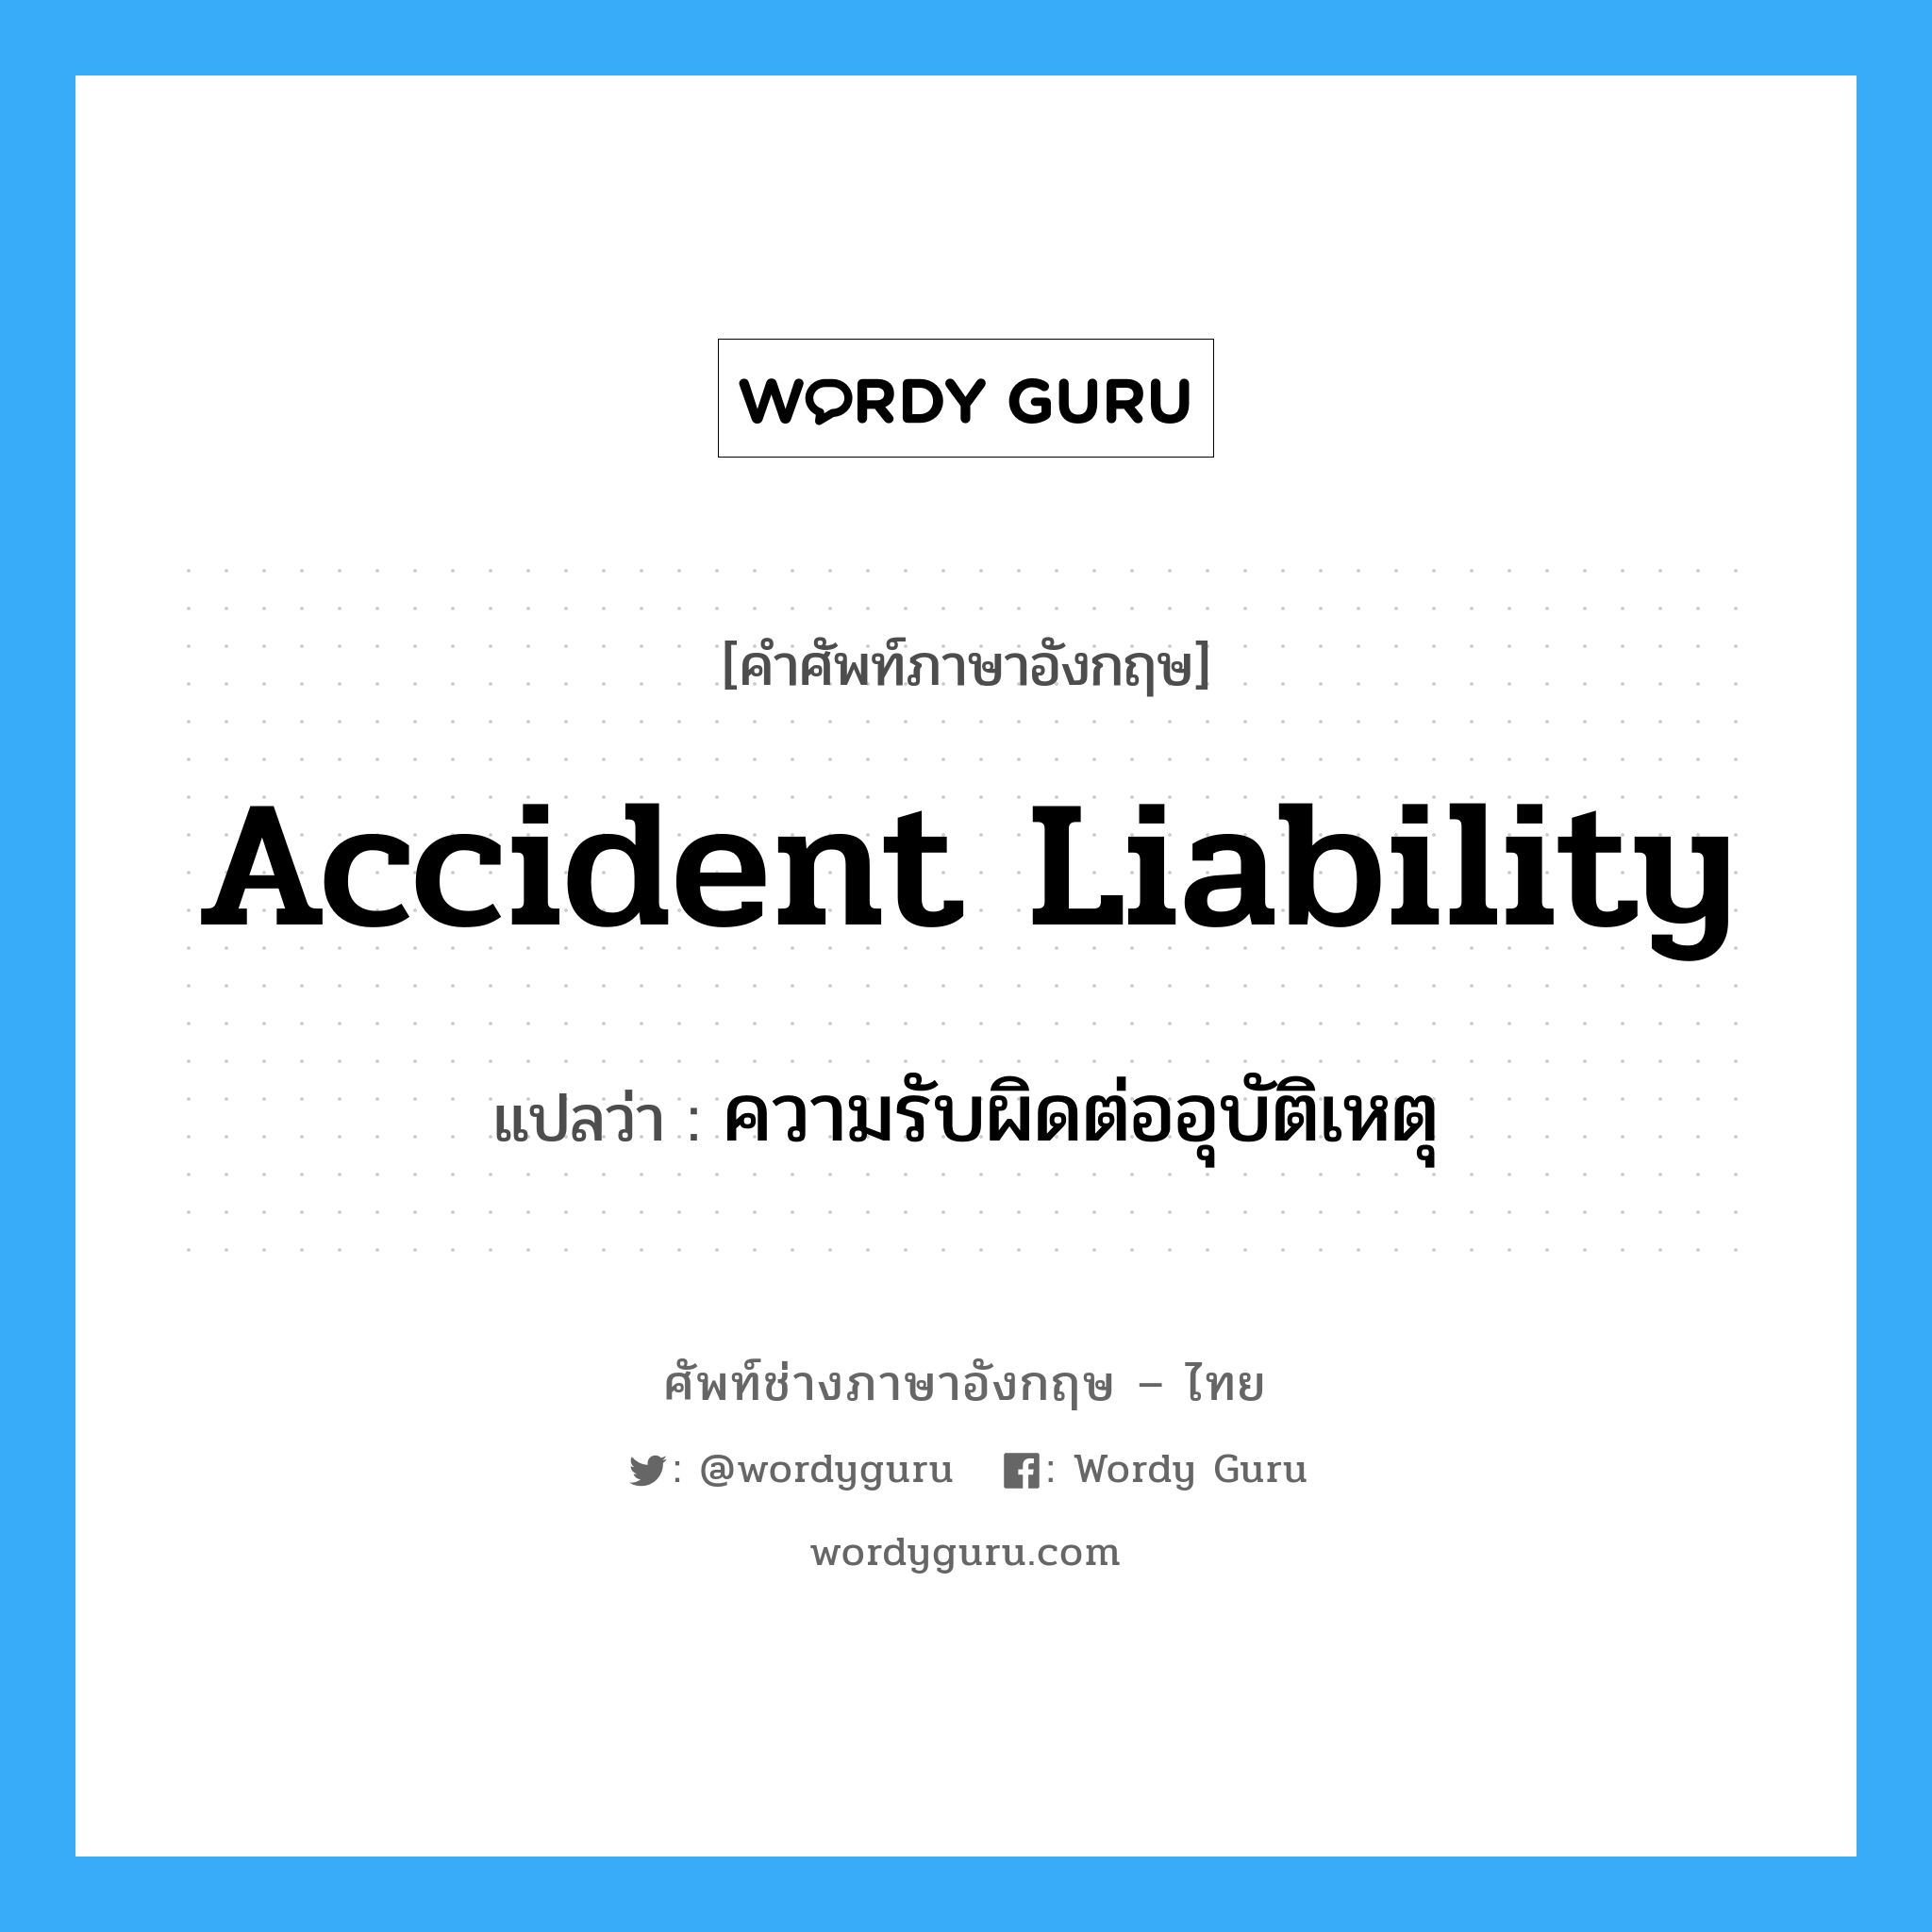 ความรับผิดต่ออุบัติเหตุ ภาษาอังกฤษ?, คำศัพท์ช่างภาษาอังกฤษ - ไทย ความรับผิดต่ออุบัติเหตุ คำศัพท์ภาษาอังกฤษ ความรับผิดต่ออุบัติเหตุ แปลว่า Accident Liability